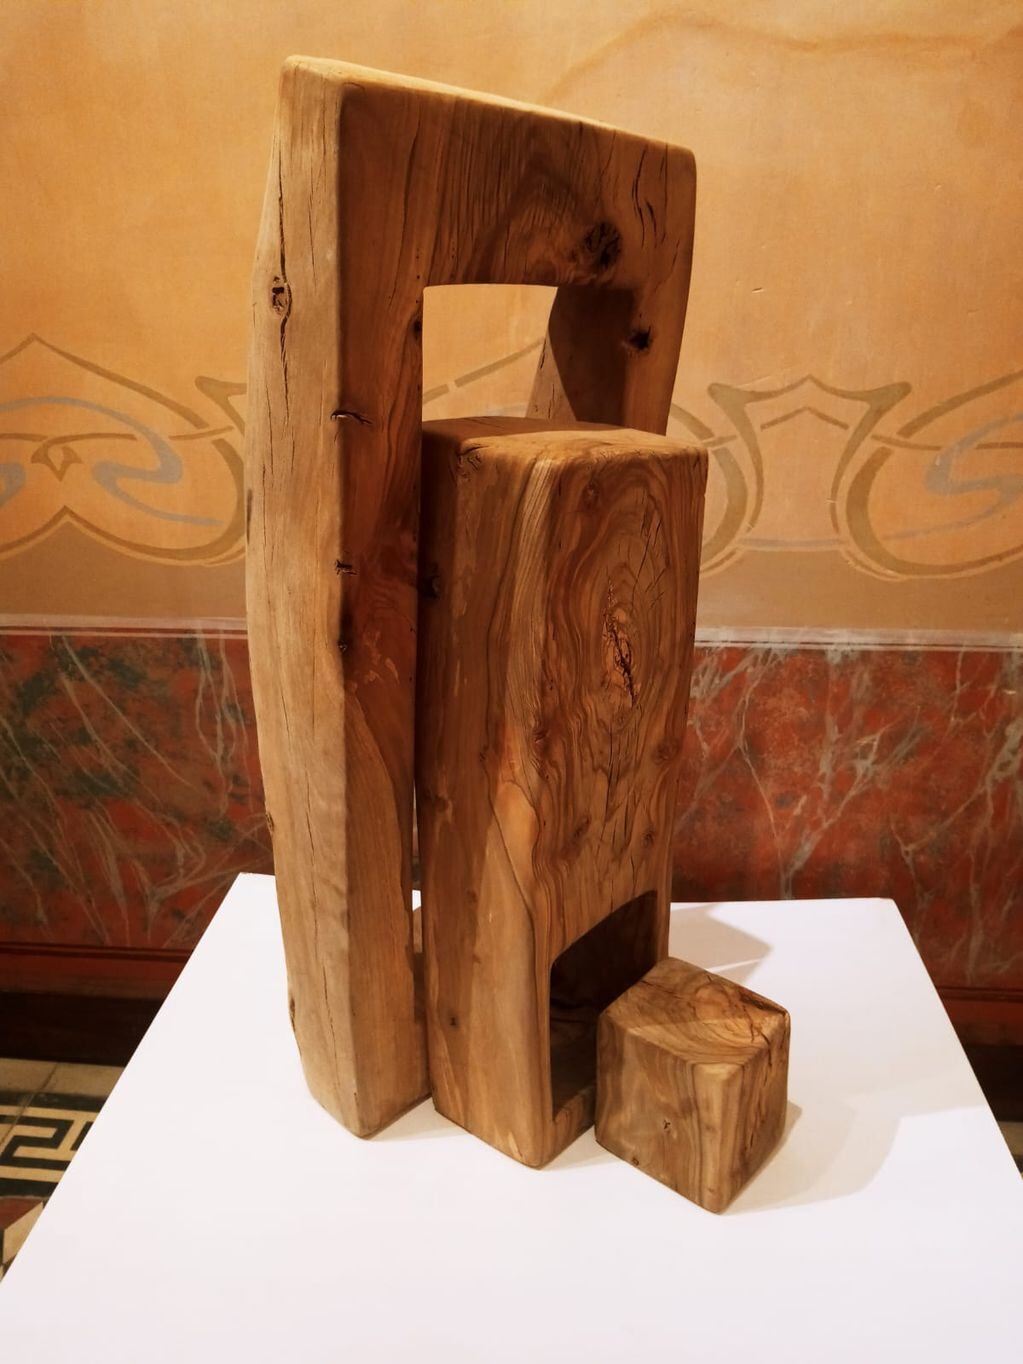 Las piezas artísticas partes de trozos de madera rescatados